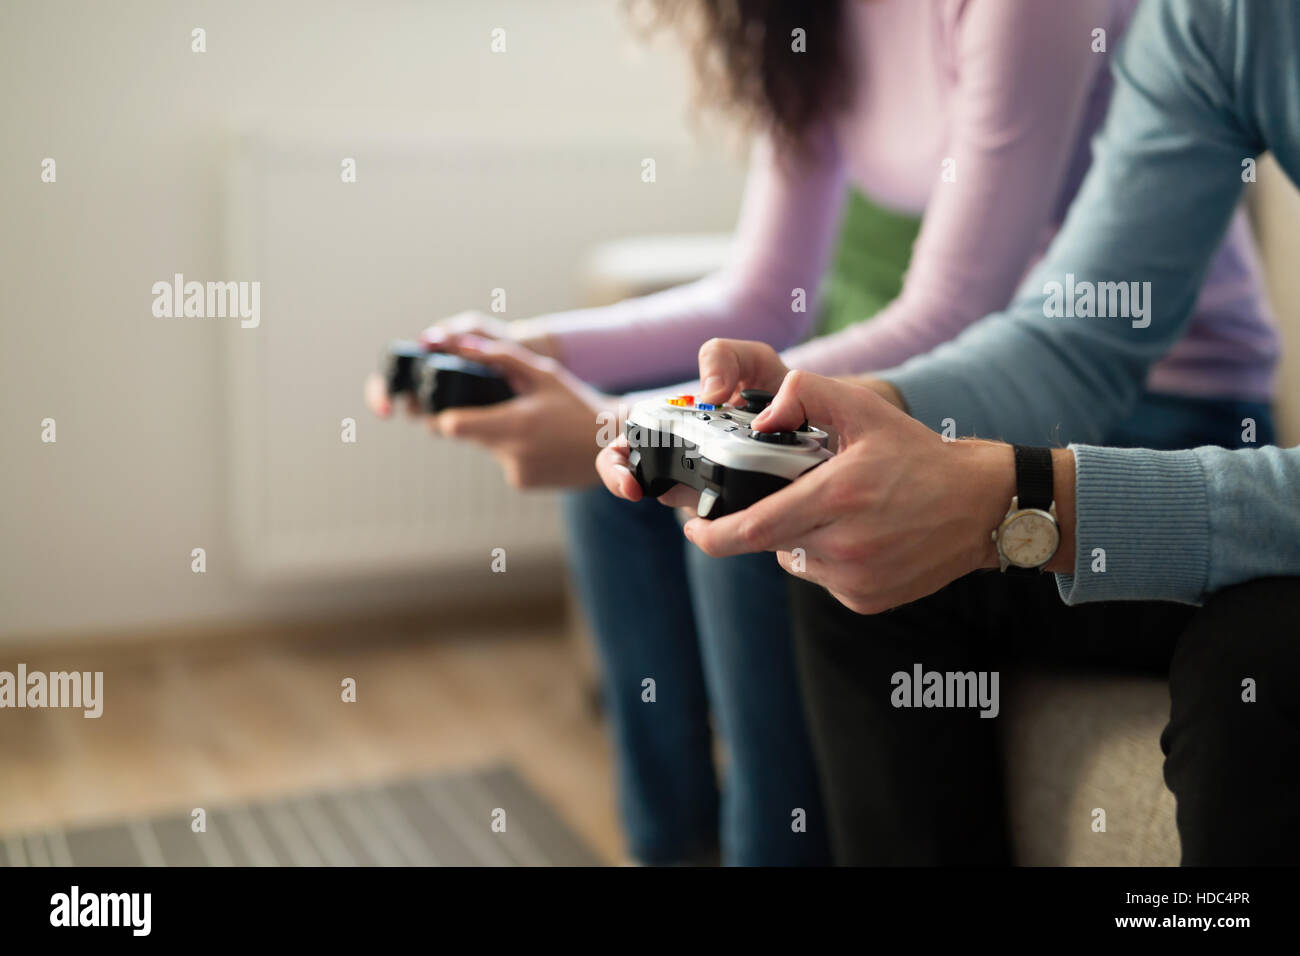 Los jóvenes jugando juegos de video en la consola controladores Foto de stock